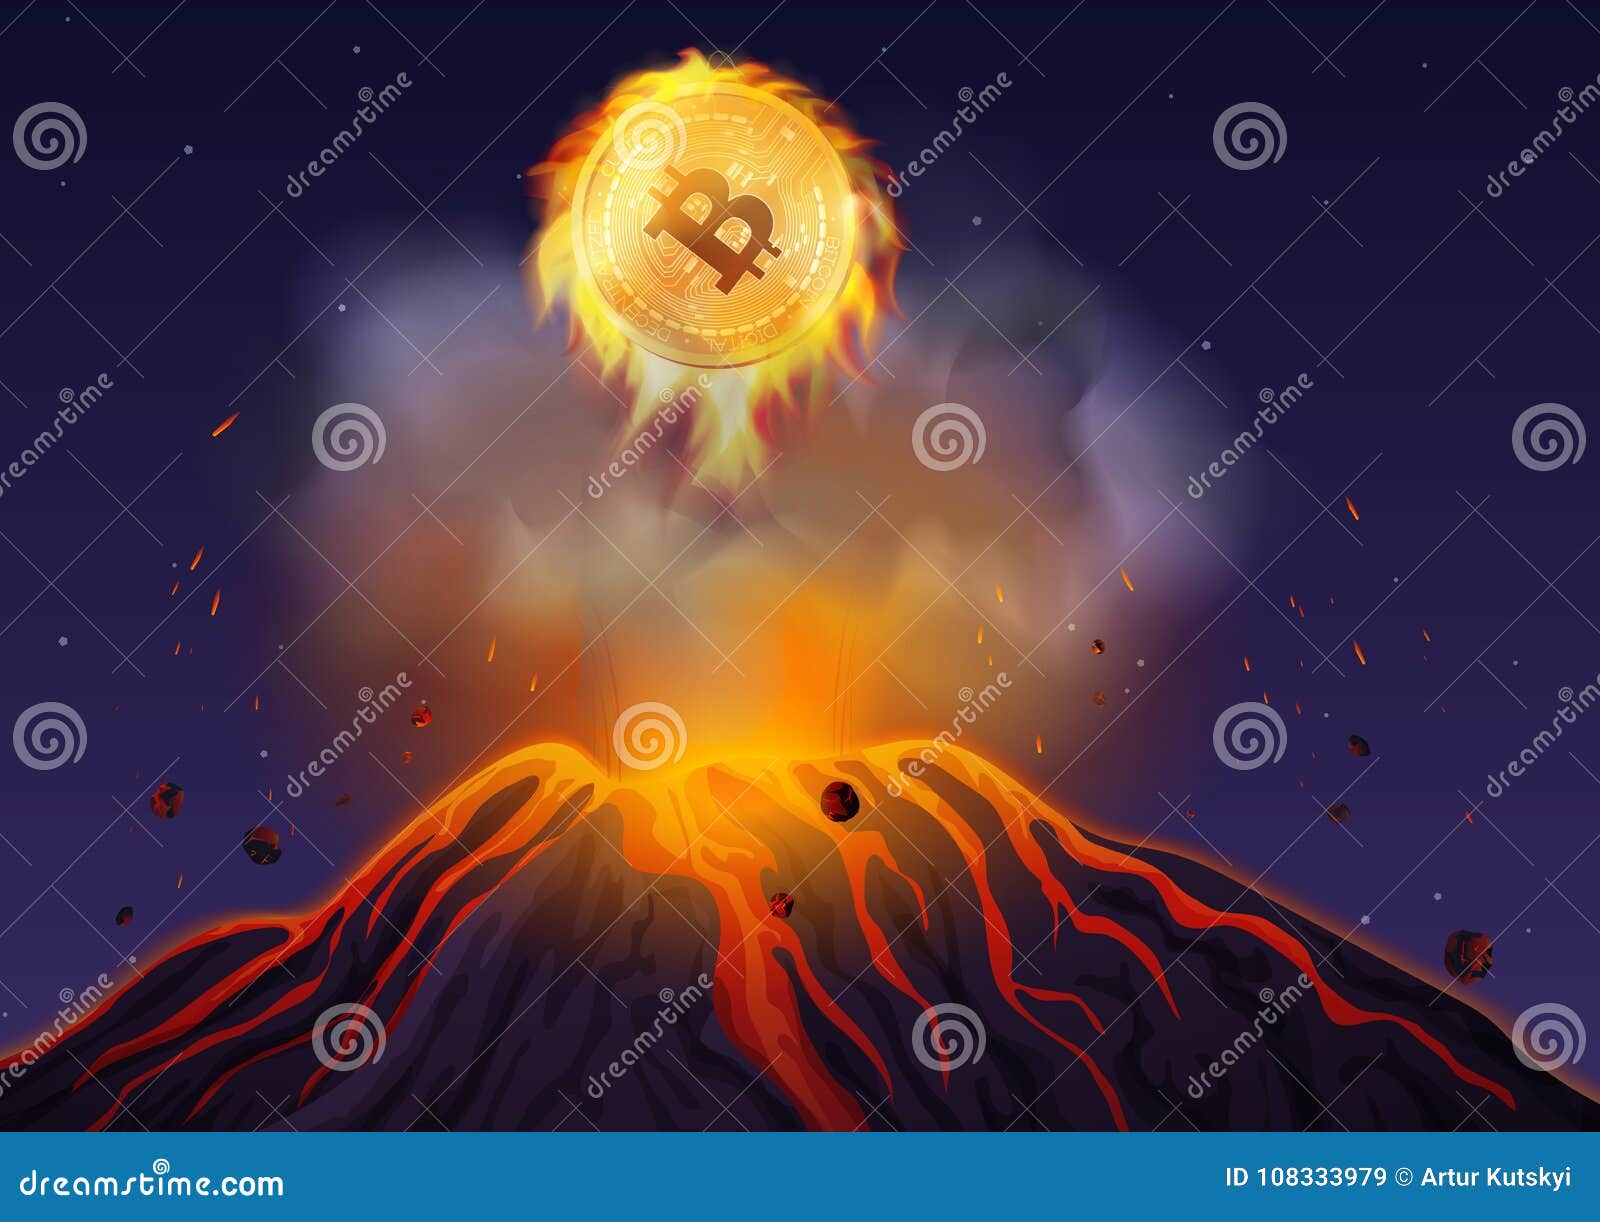 bitcoin volcano